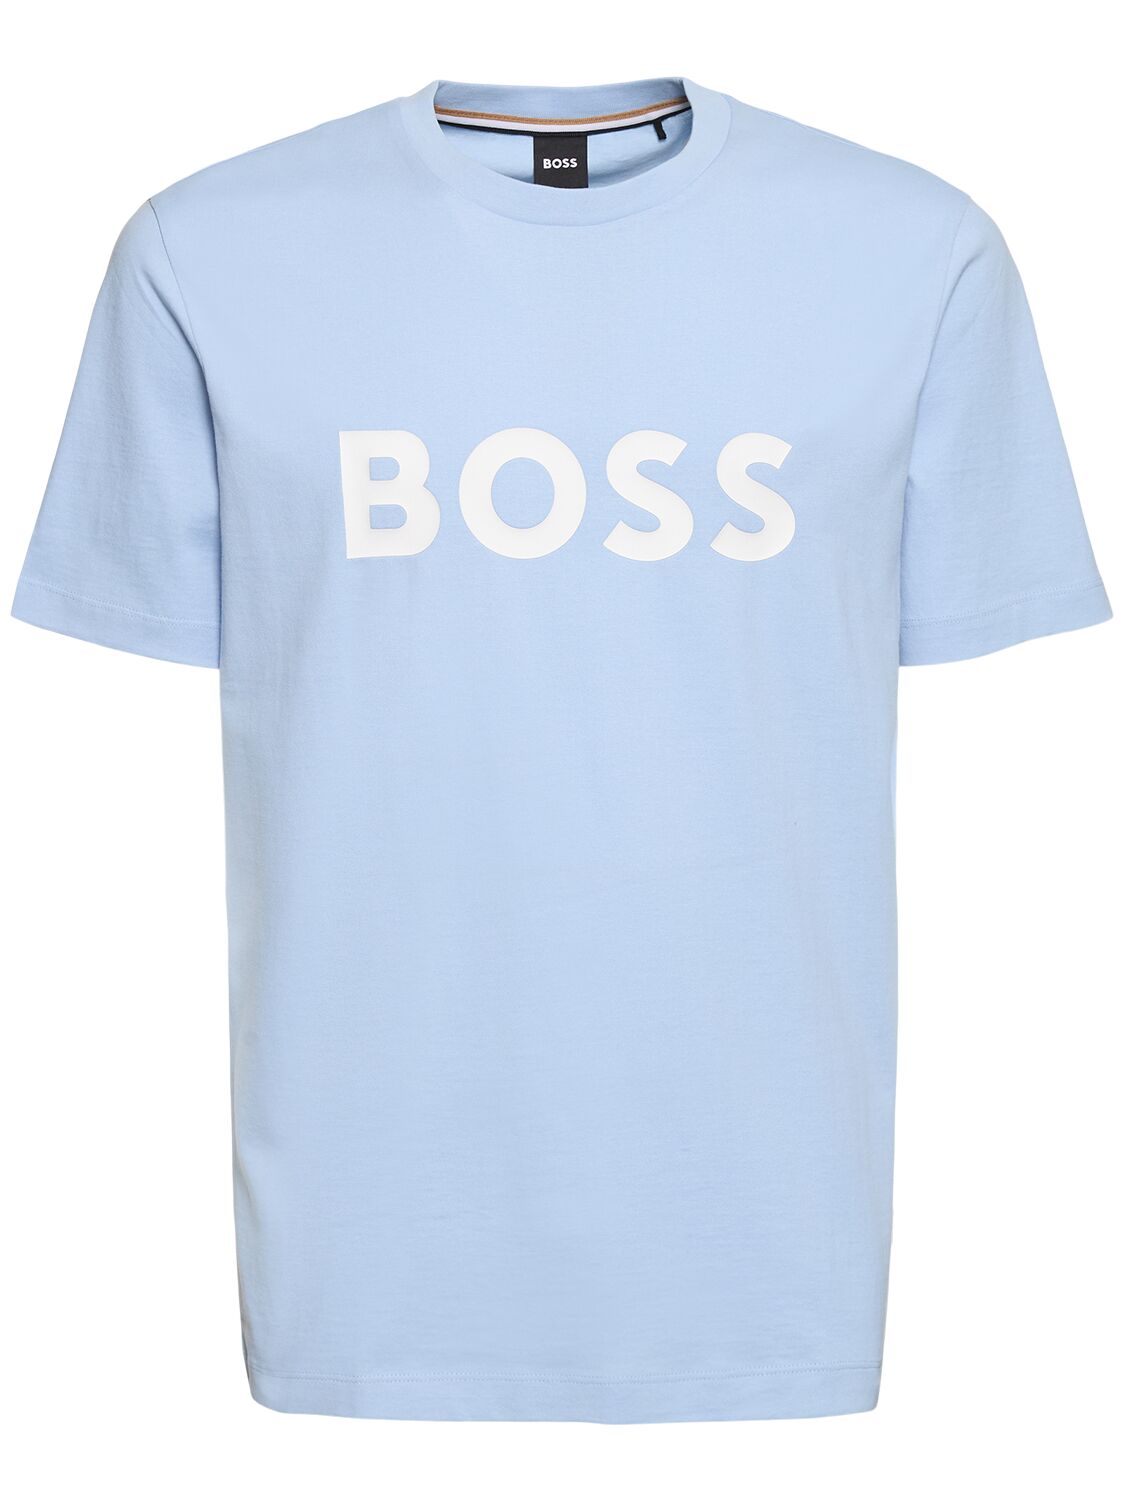 Hugo Boss Tiburt 354 Logo棉质t恤 In Blue